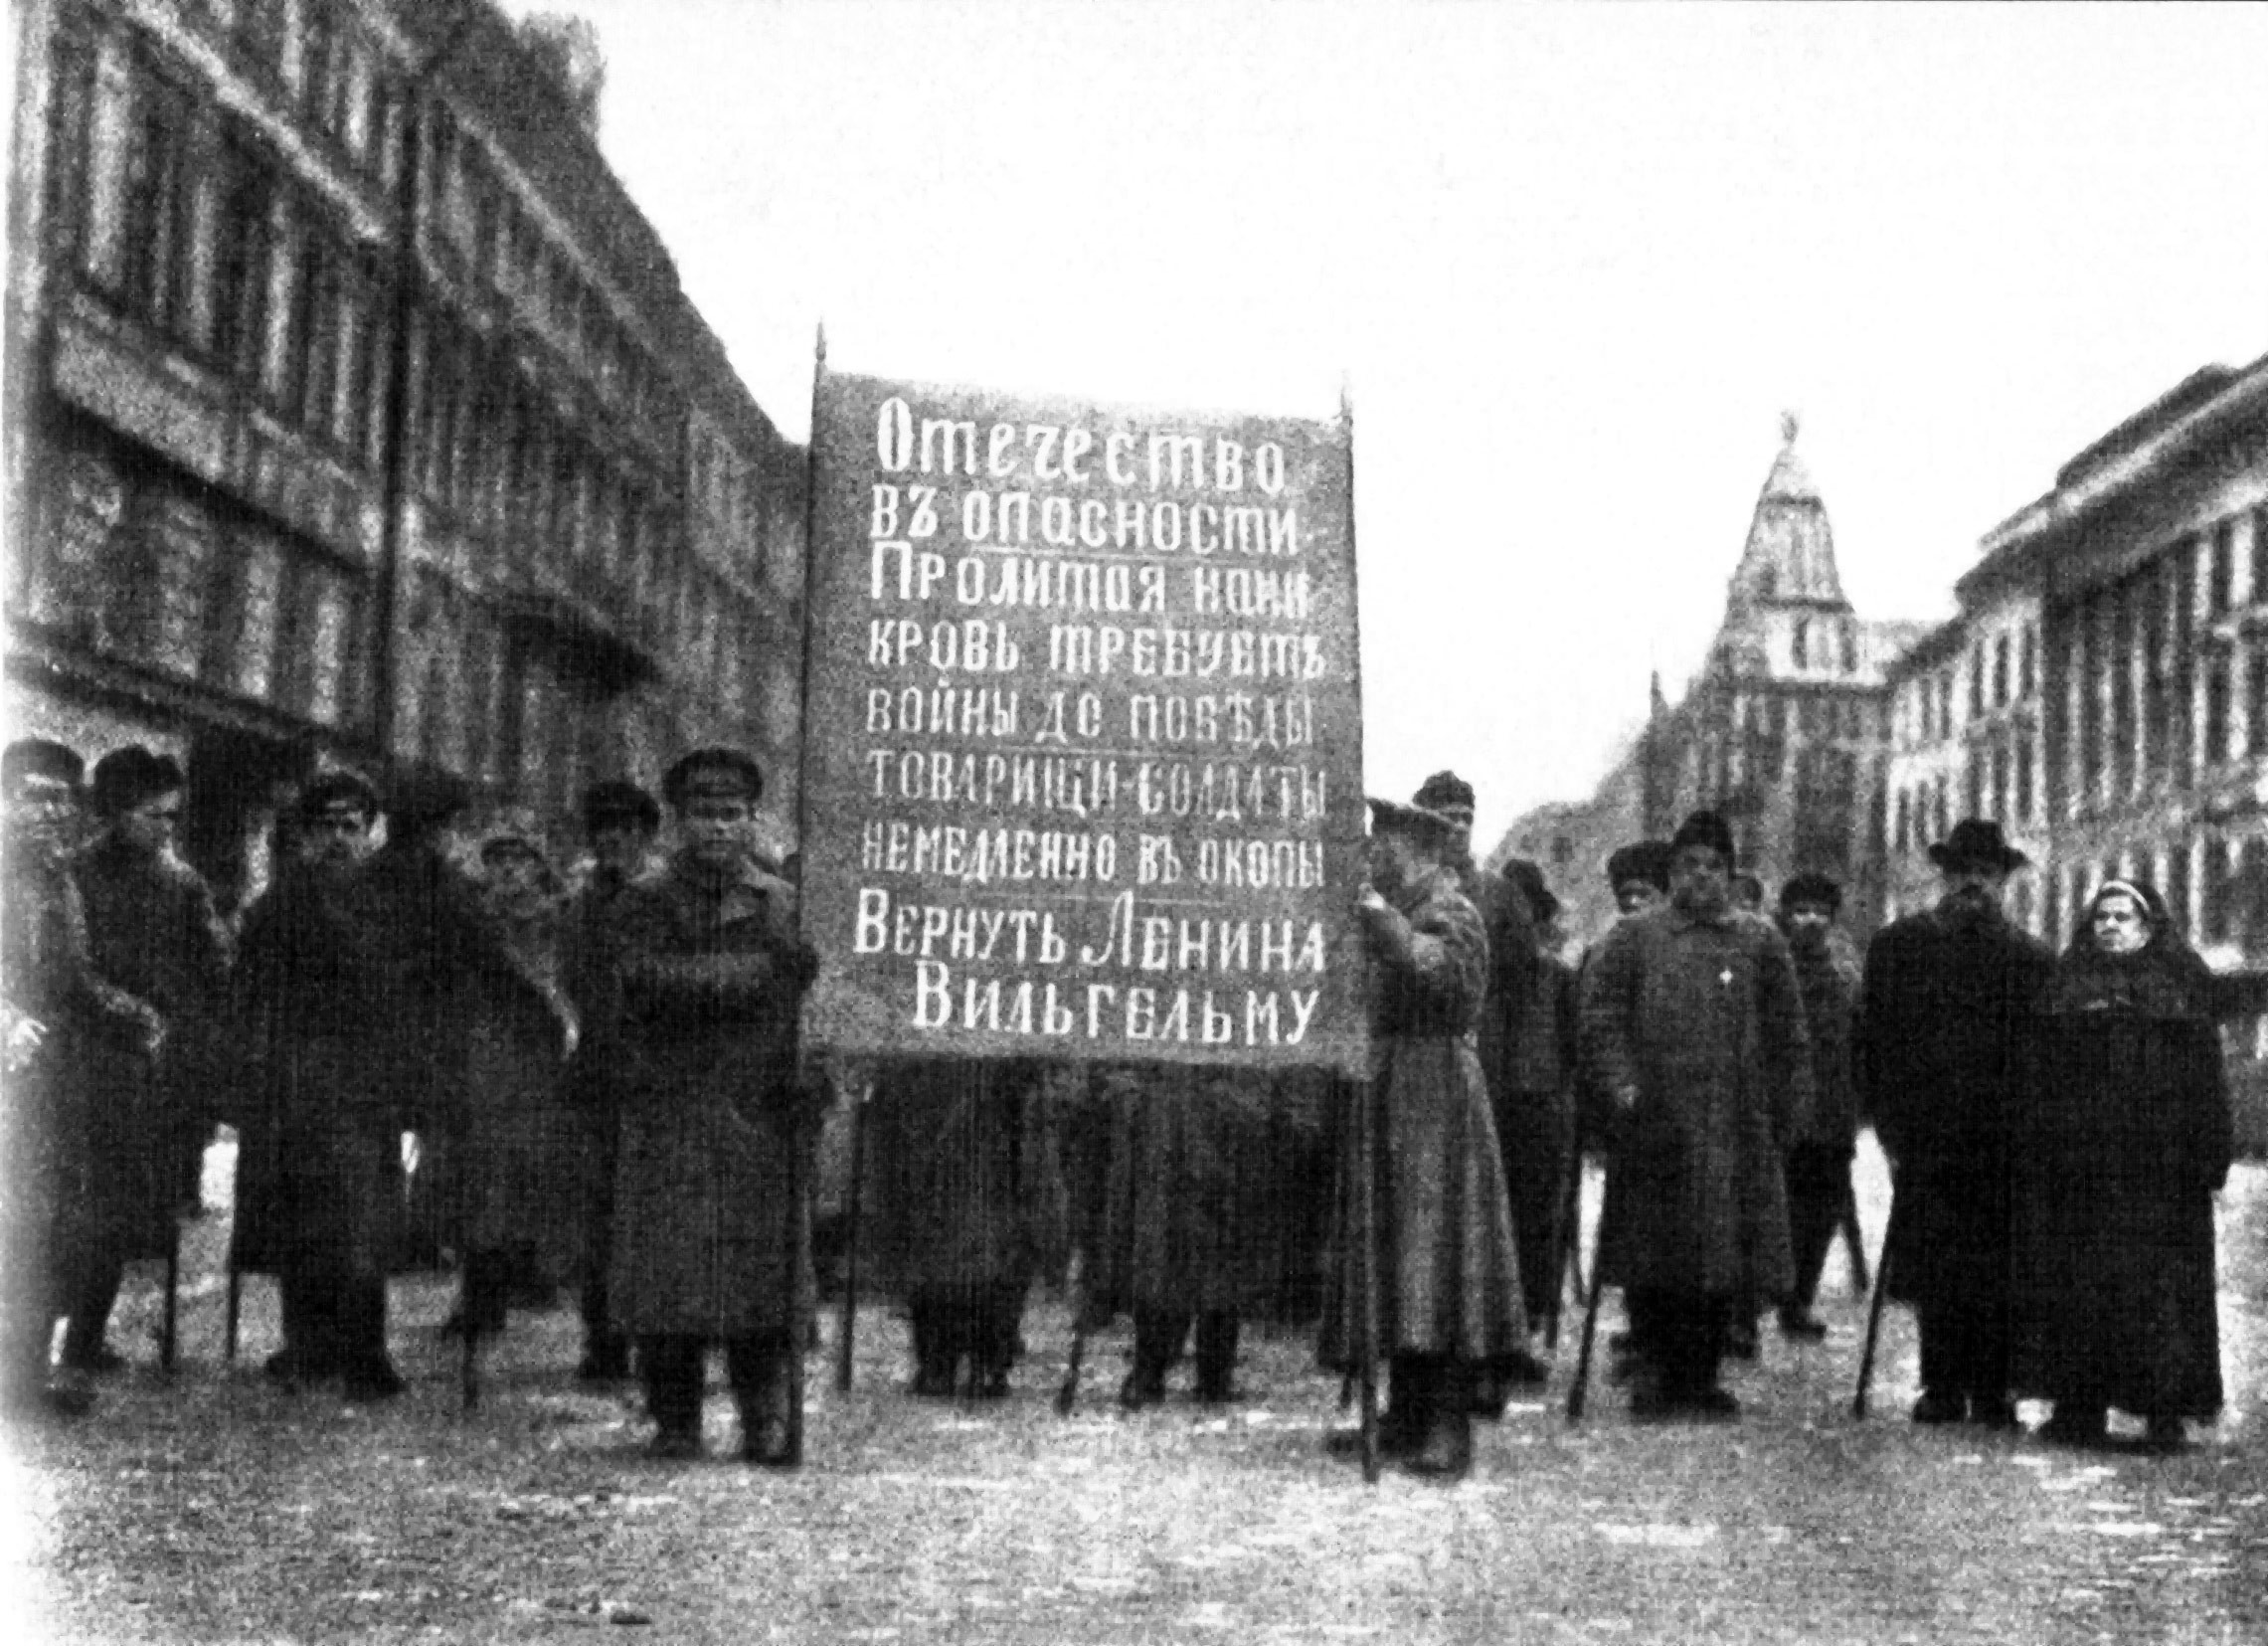 Алхимия революции: что произошло в октябре 1917 года